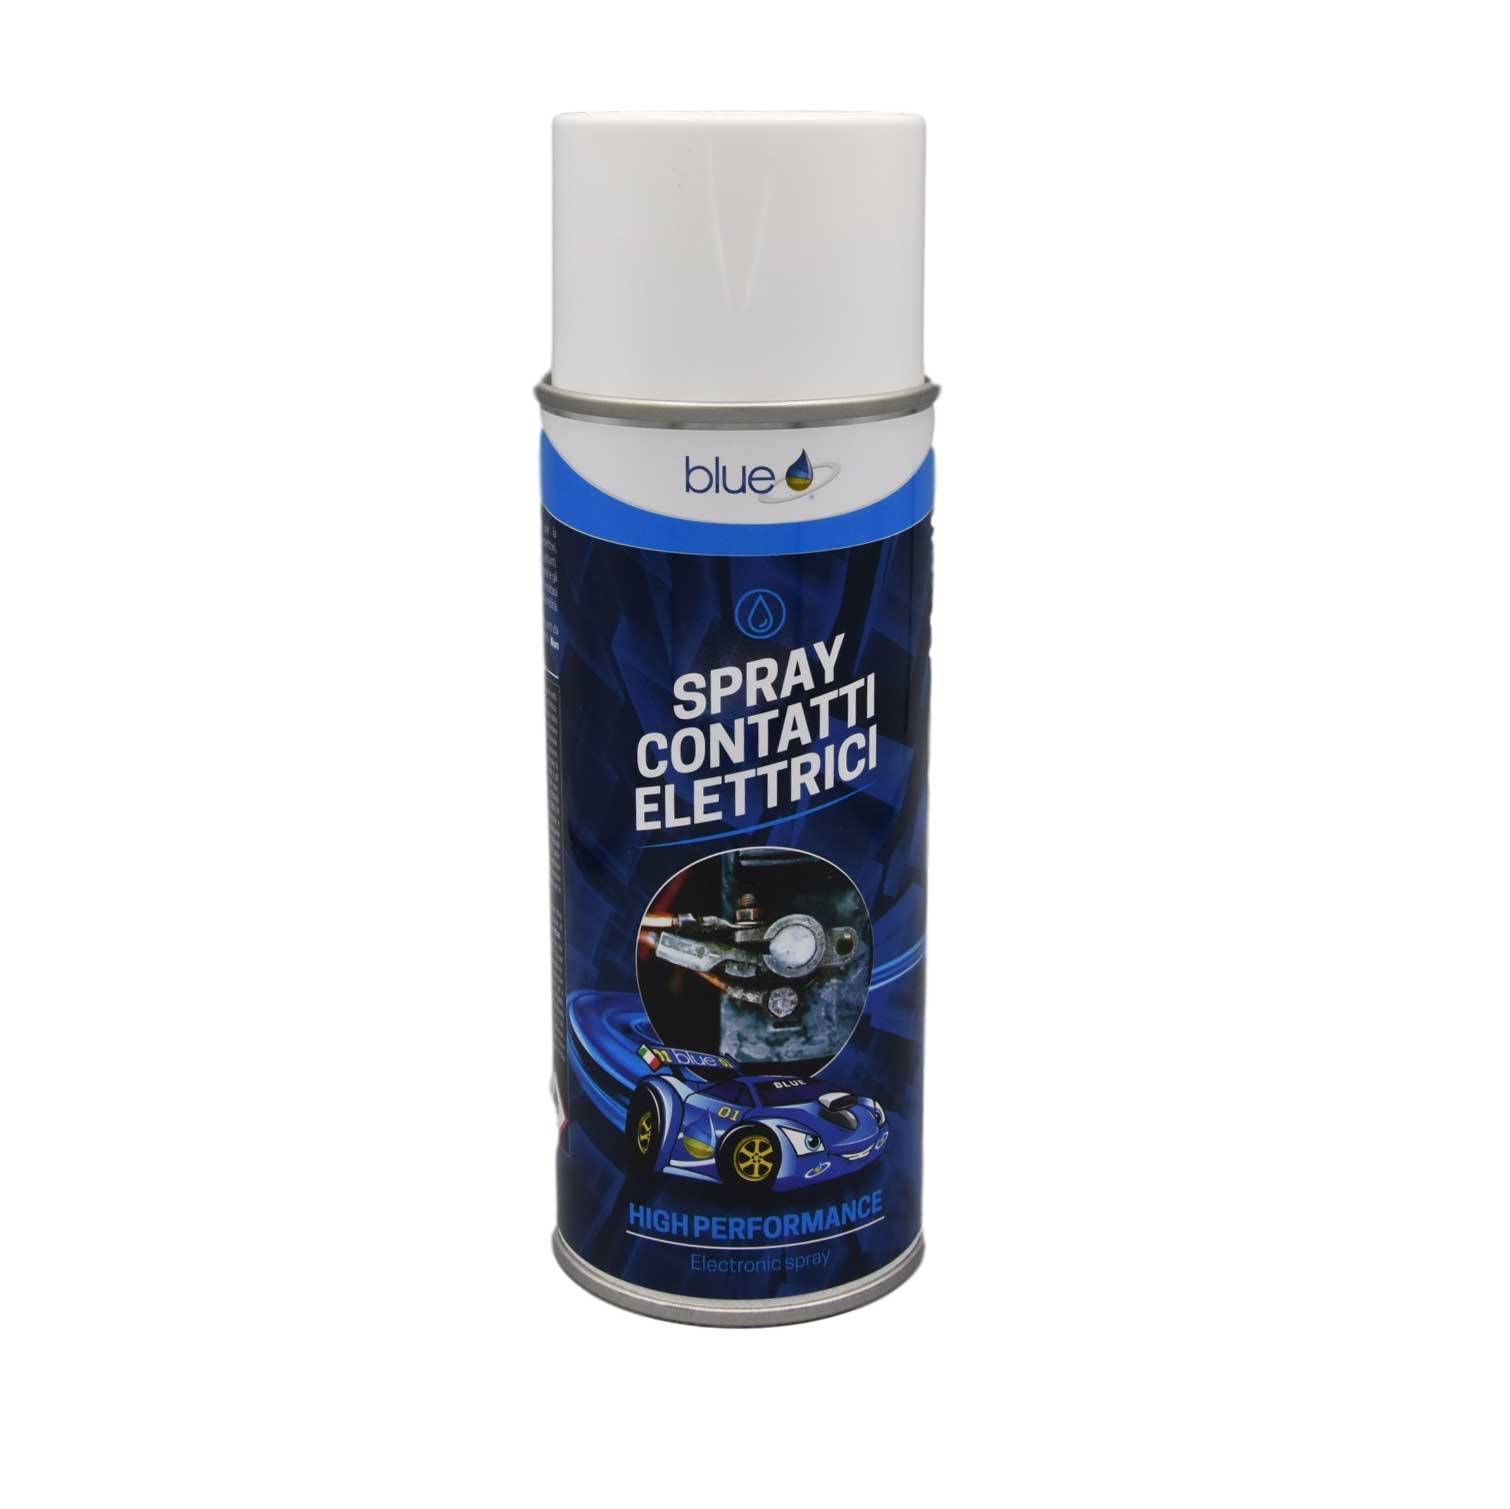 Spray contatti elettrici - Lubrifica e riduce usura - Additivi Blue